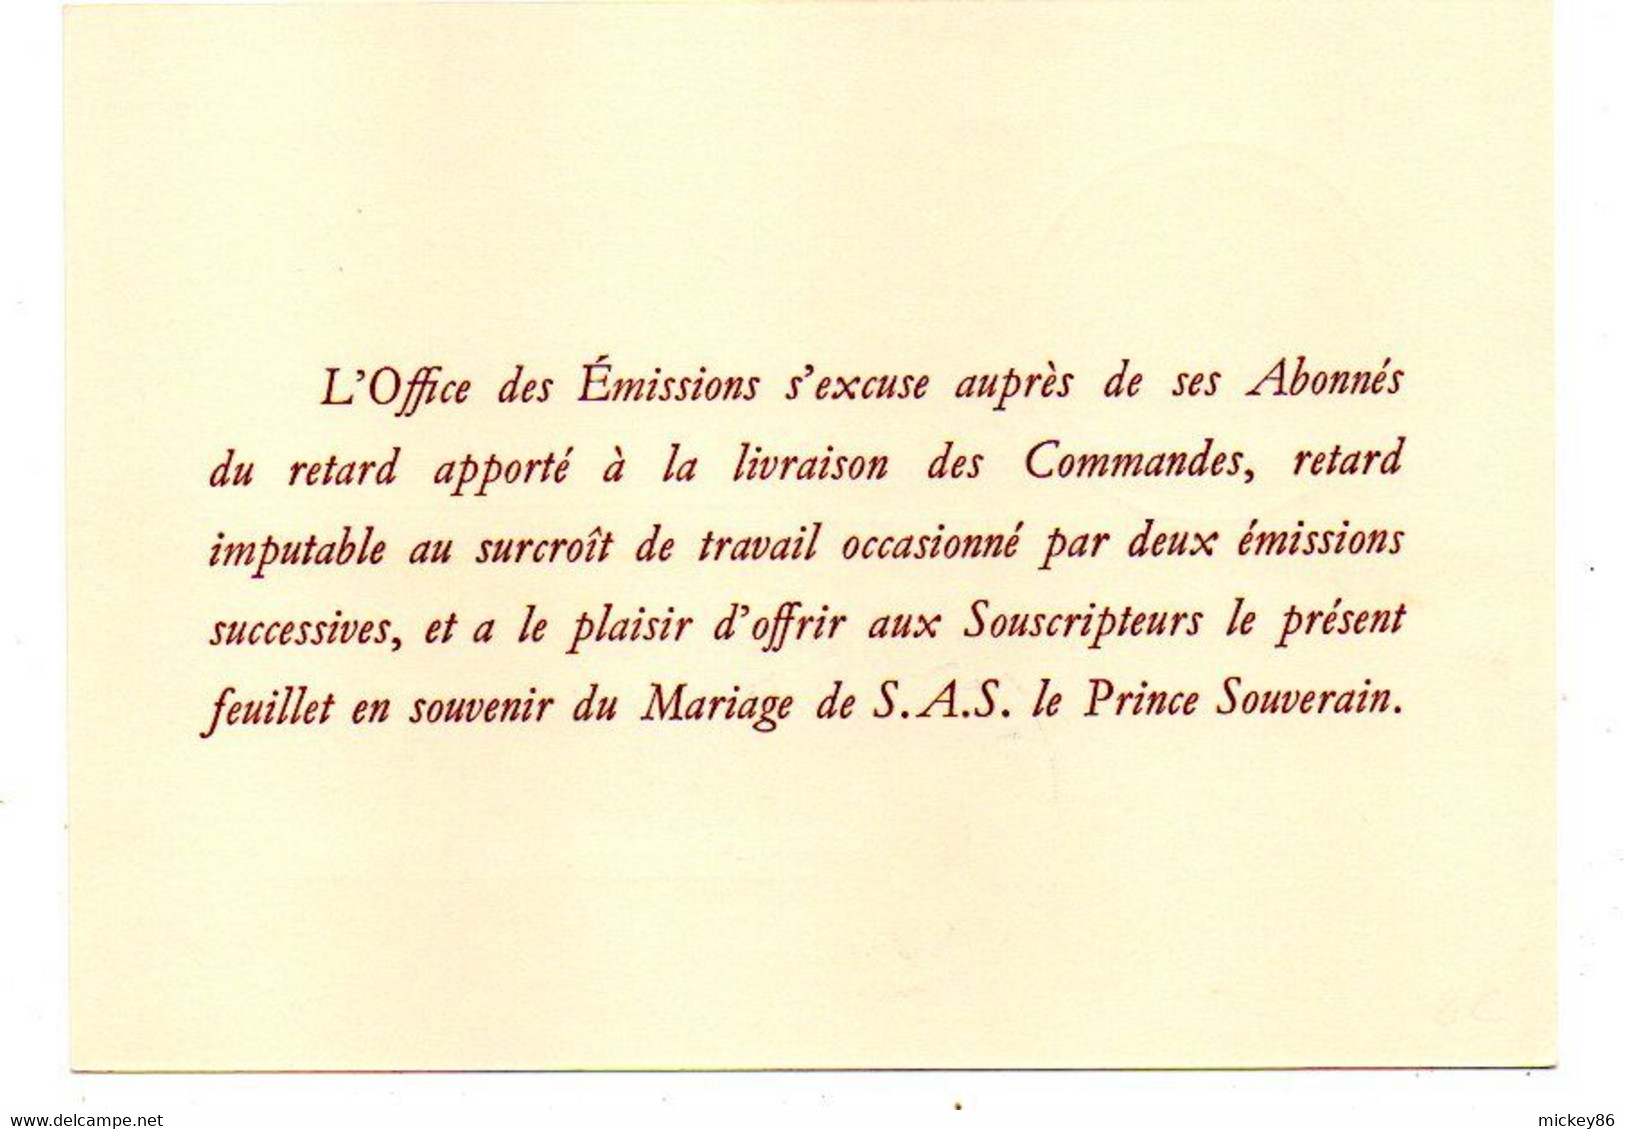 MONACO- 1956 - Lot De 2 Souvenirs Philatéliques Sur Carte ..cachet  MONACO  --19 Avril 1956 - Lettres & Documents